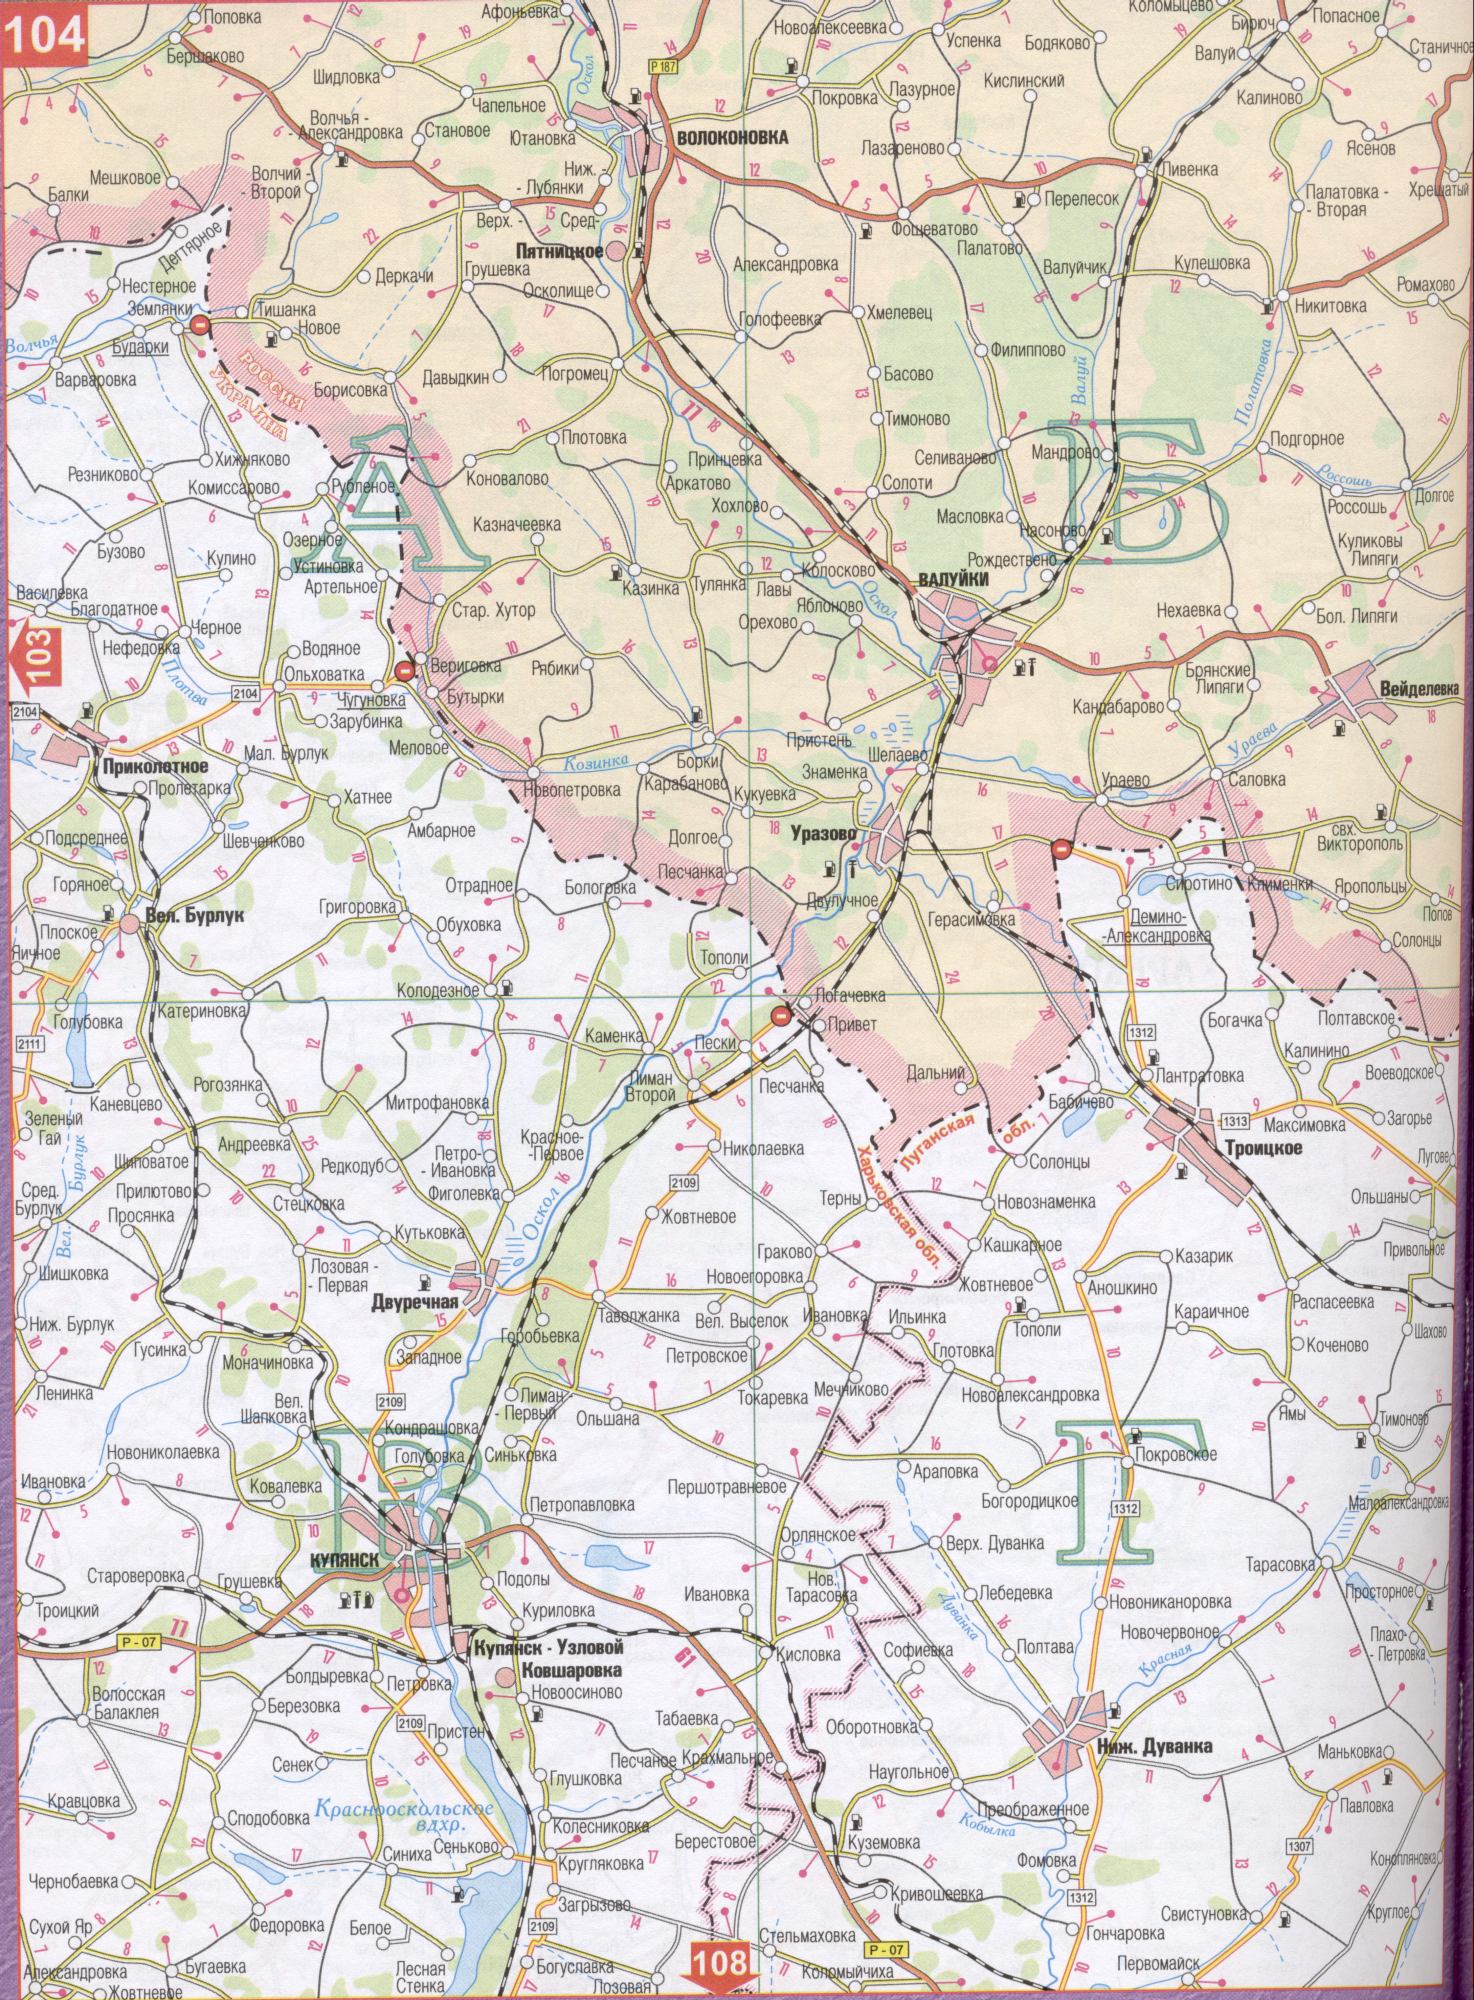 Carte de la région de Kharkiv de l'Ukraine (centre régional de Kharkov). Télécharger une carte détaillée des routes, C0